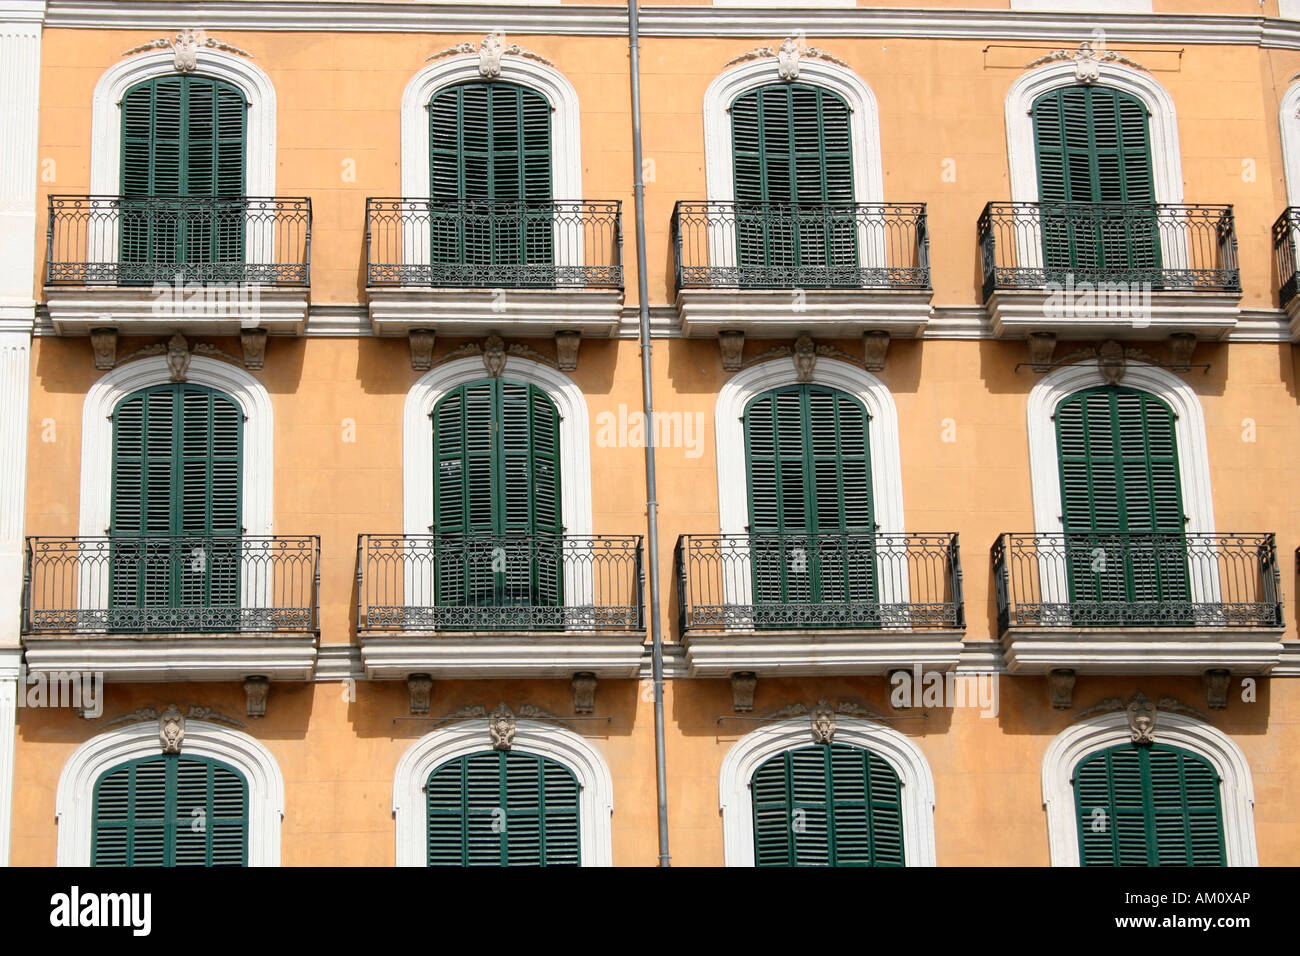 Facade mediterranean style, old town, Palma, Mallorca, Spain Stock Photo